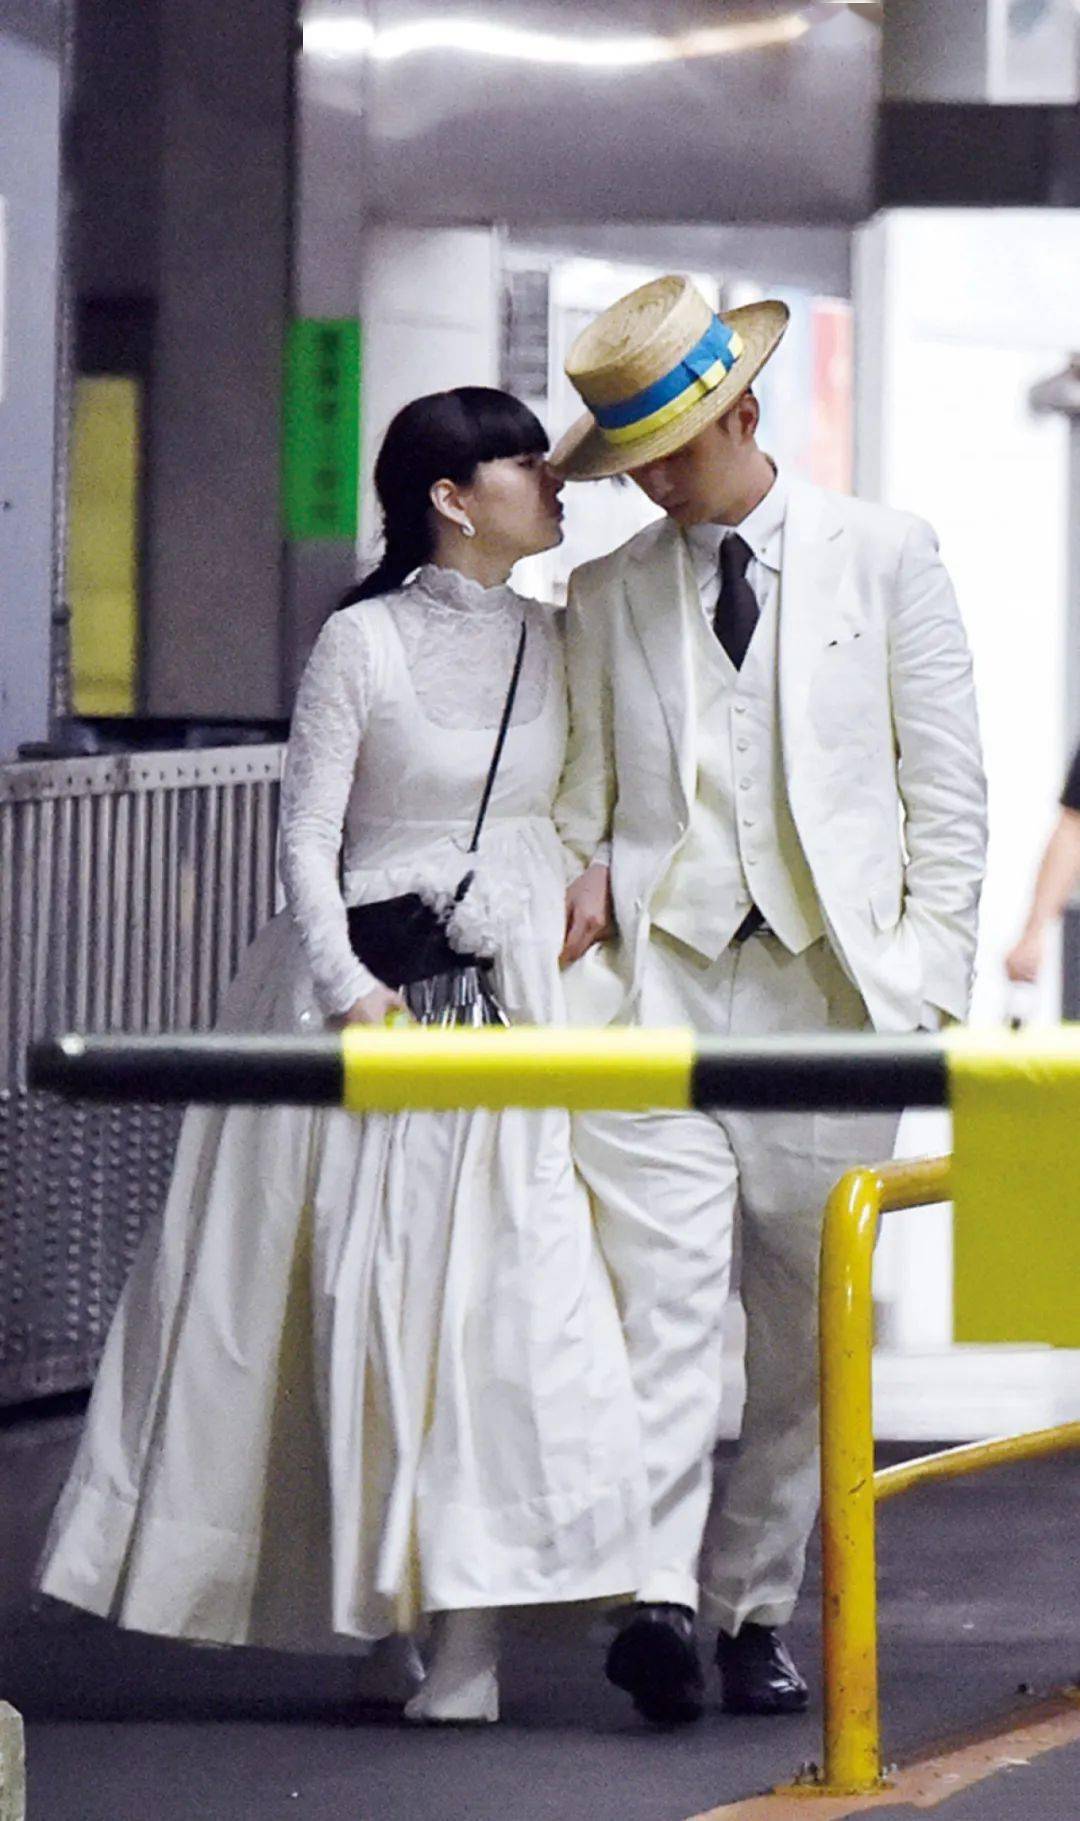 松田翔太结婚图片